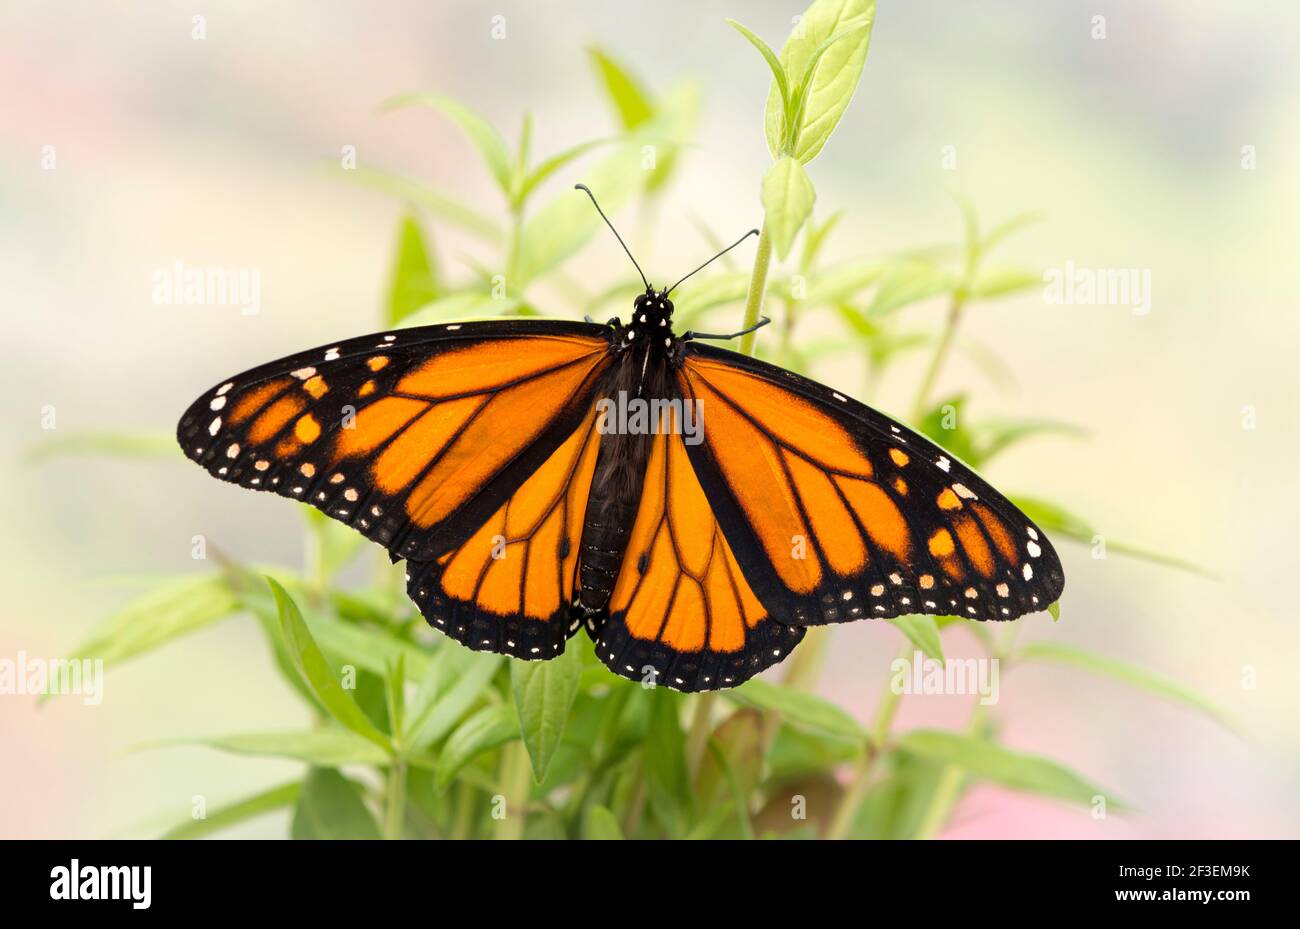 Macro de una mariposa monarca / danaus plexippus con propagación alas en plántulas de maleza Foto de stock